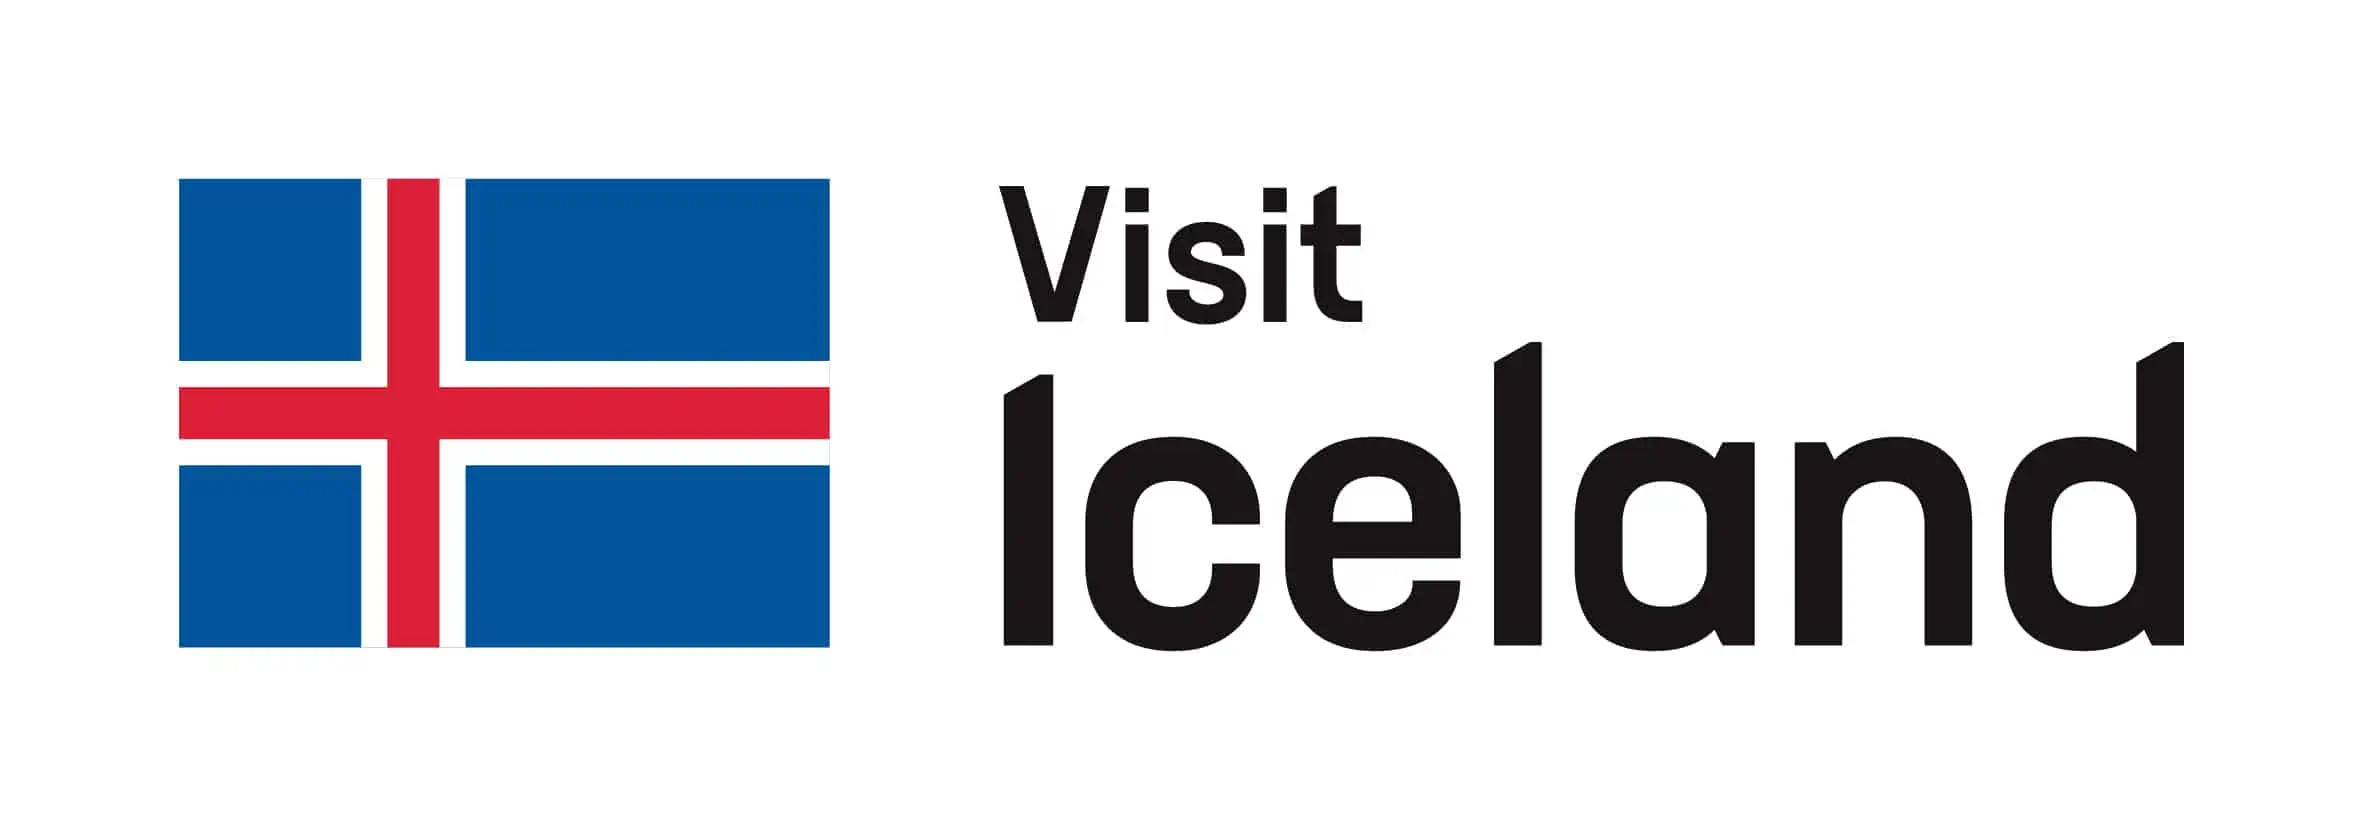 Käy Islannissa Kotelon kansi